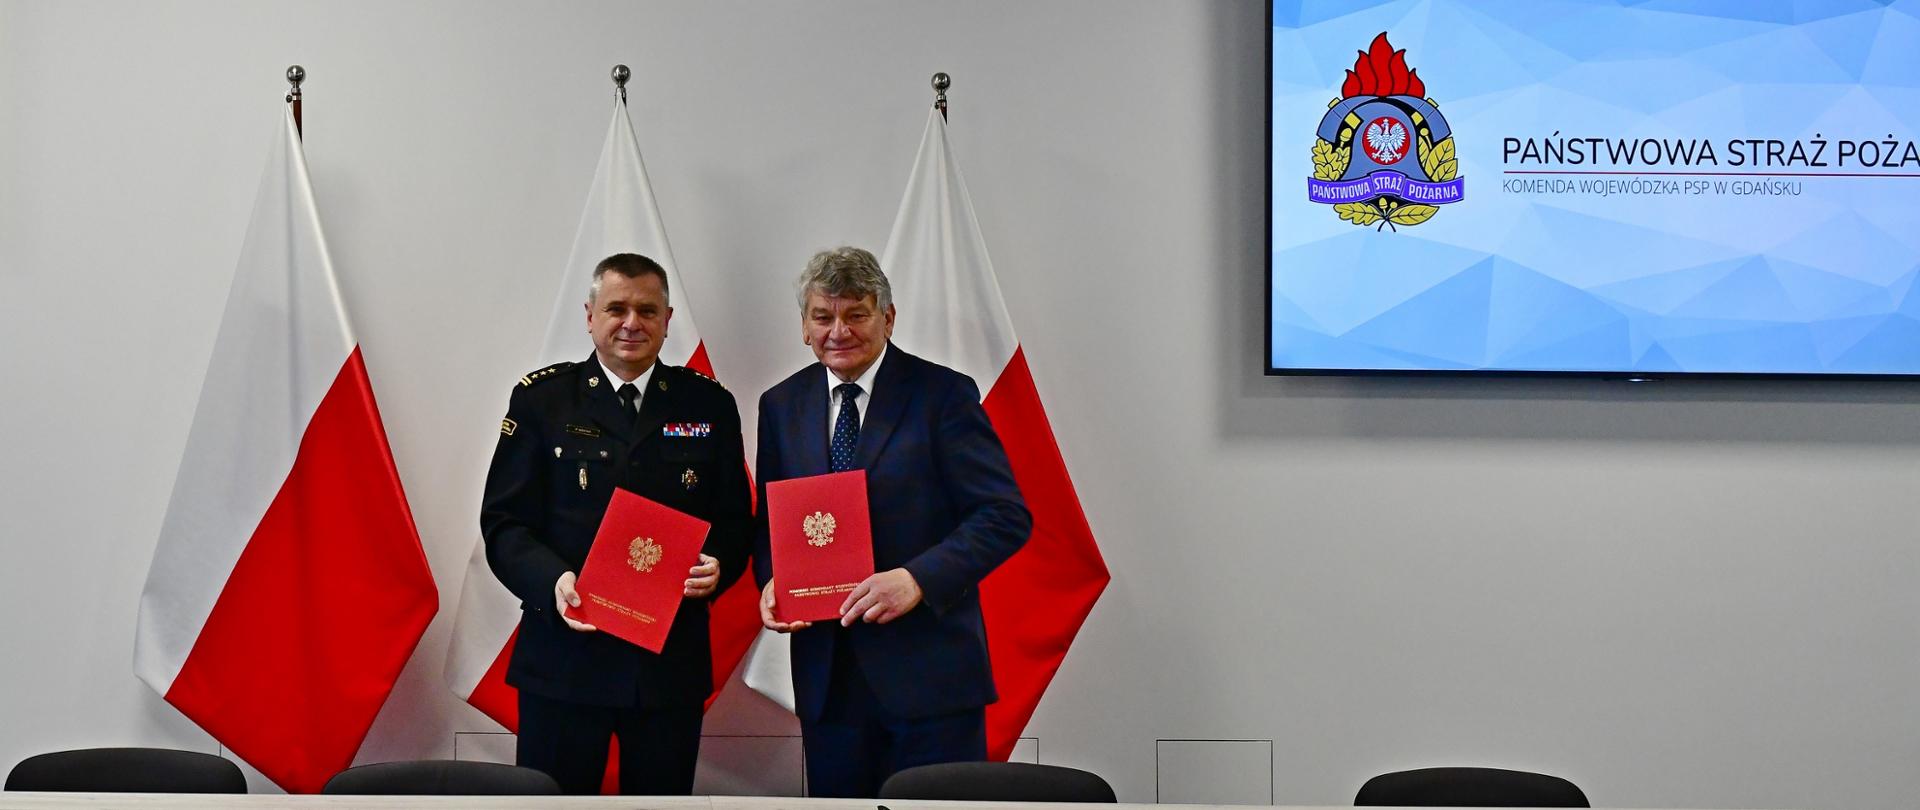 Pomorski komendant wojewódzki Państwowej Straży Pożarnej oraz wójt gminy Kobylnica trzymają czerwone teczki. Za nimi stoją flagi państwowe oraz wyświetlane jest logo Państwowej Straży Pożarnej.